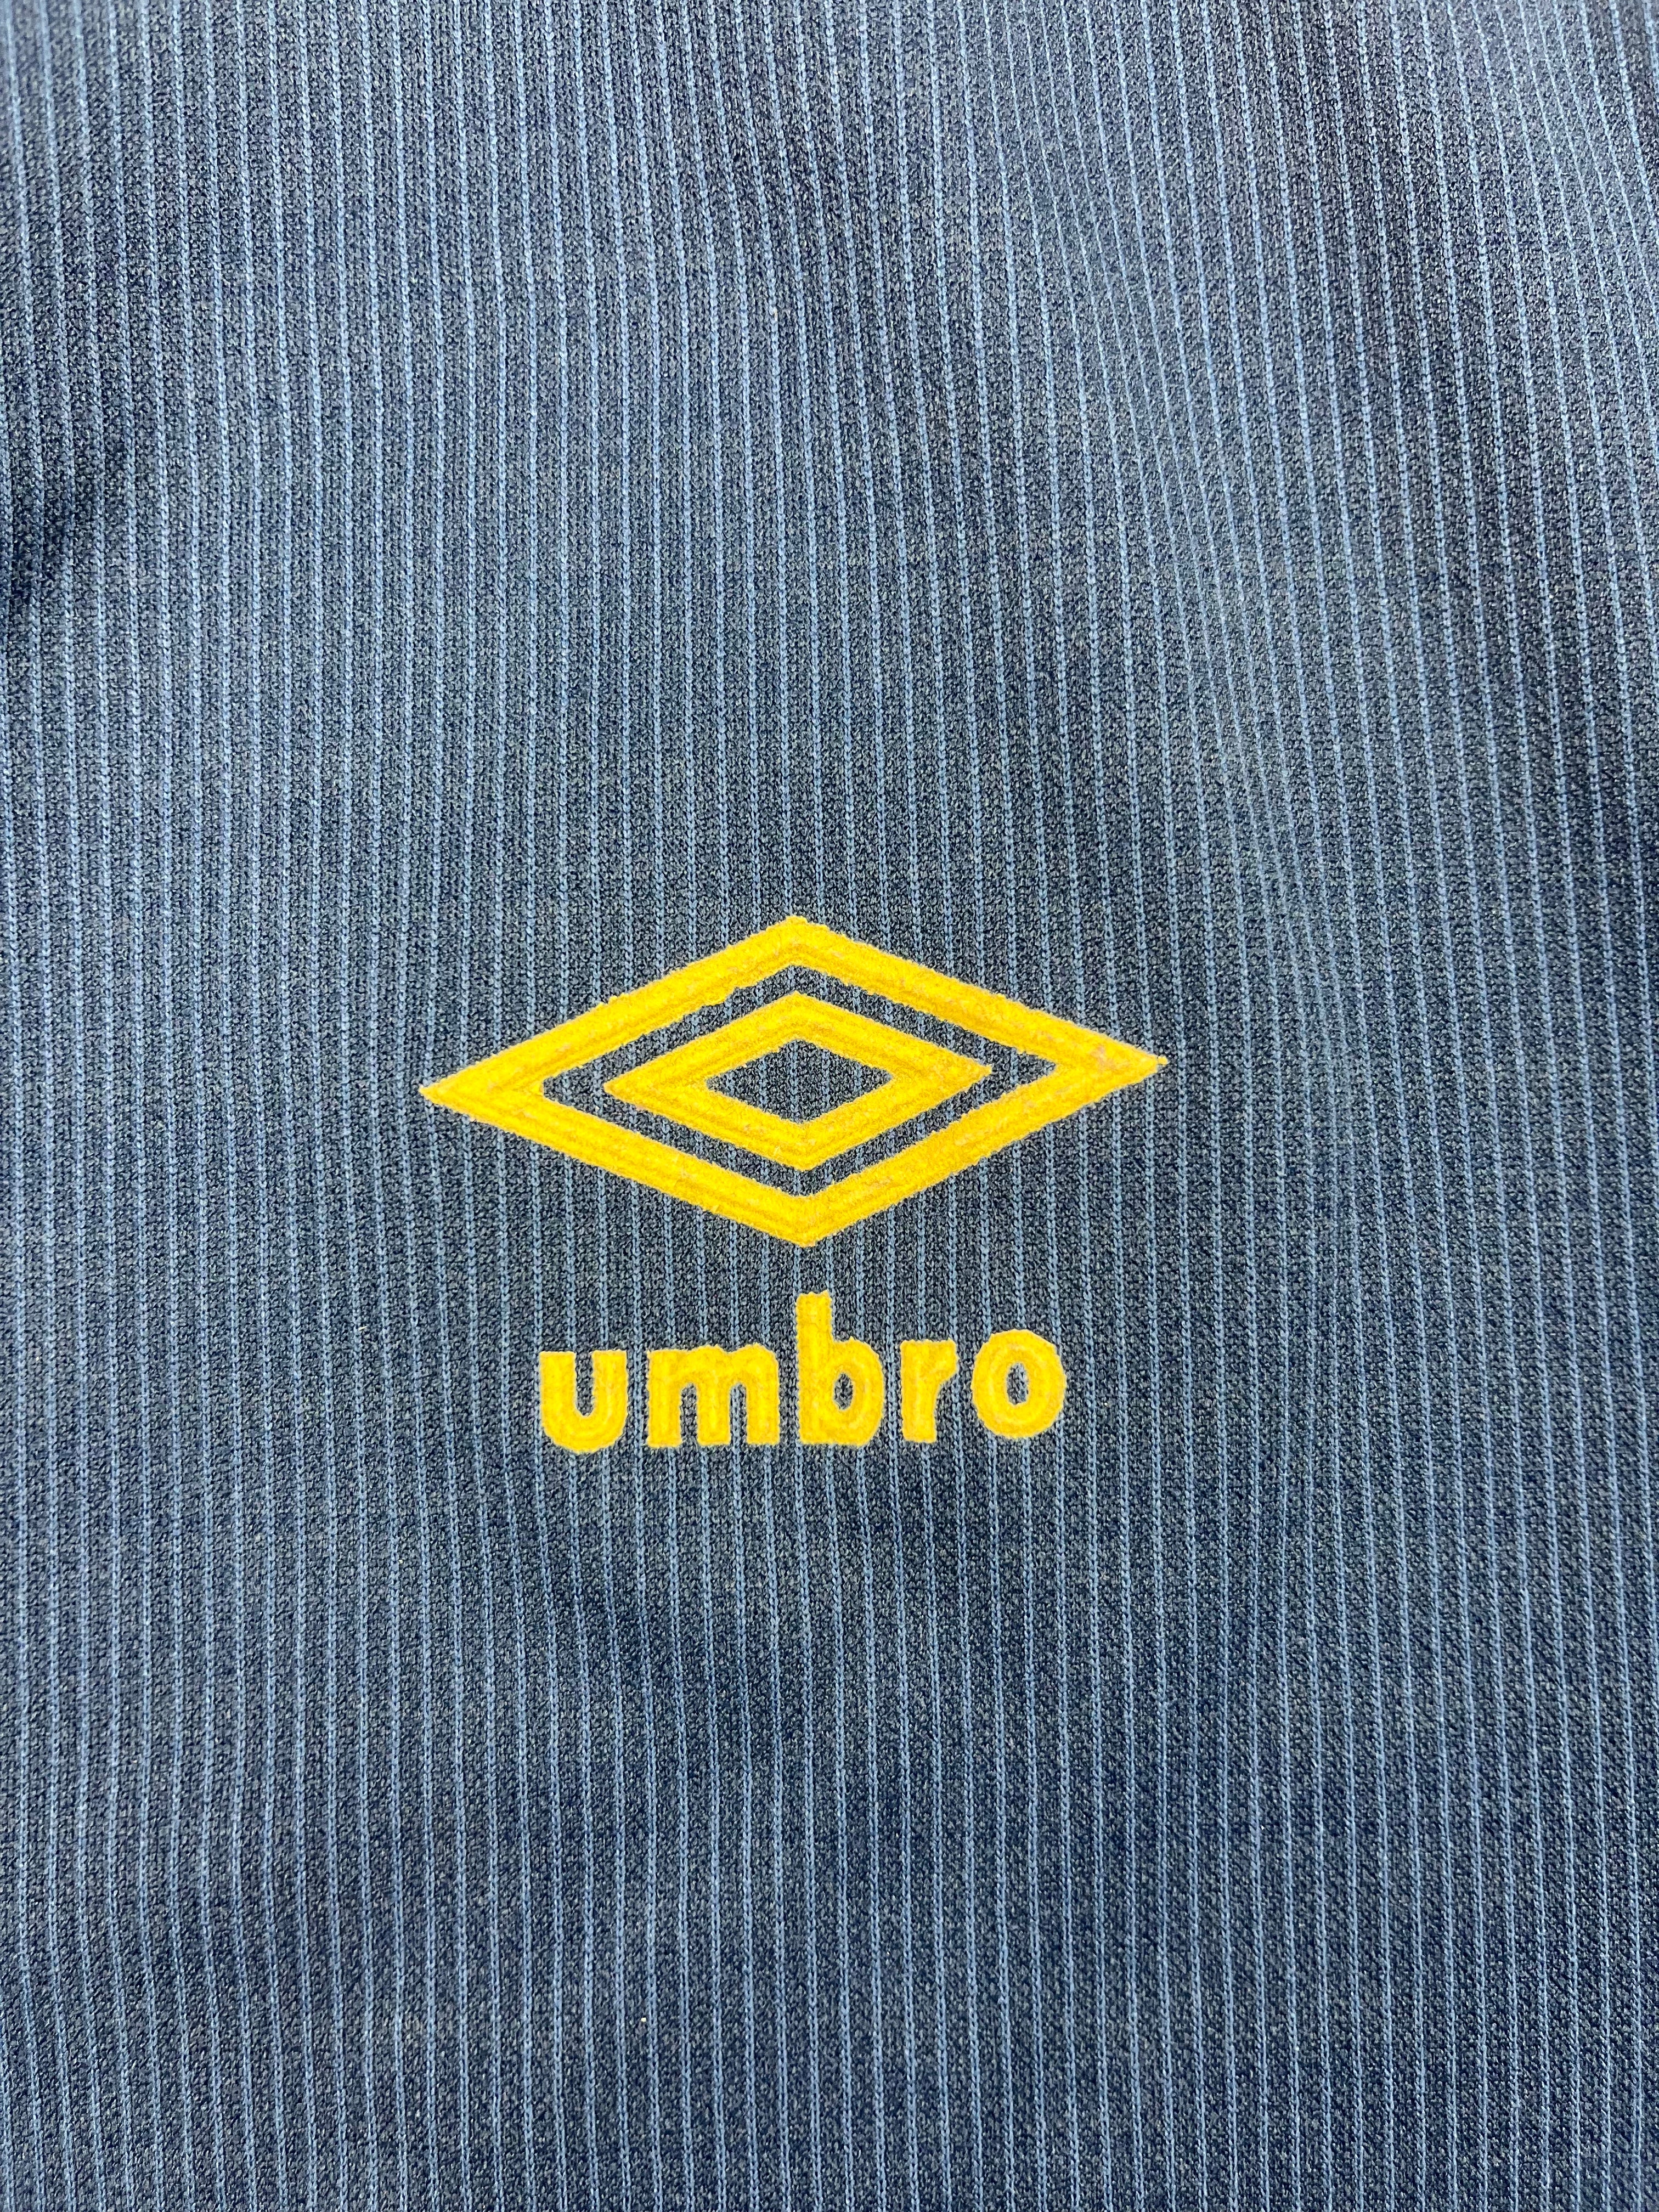 1988/91 Camiseta local de Escocia (XL) 8.5/10 